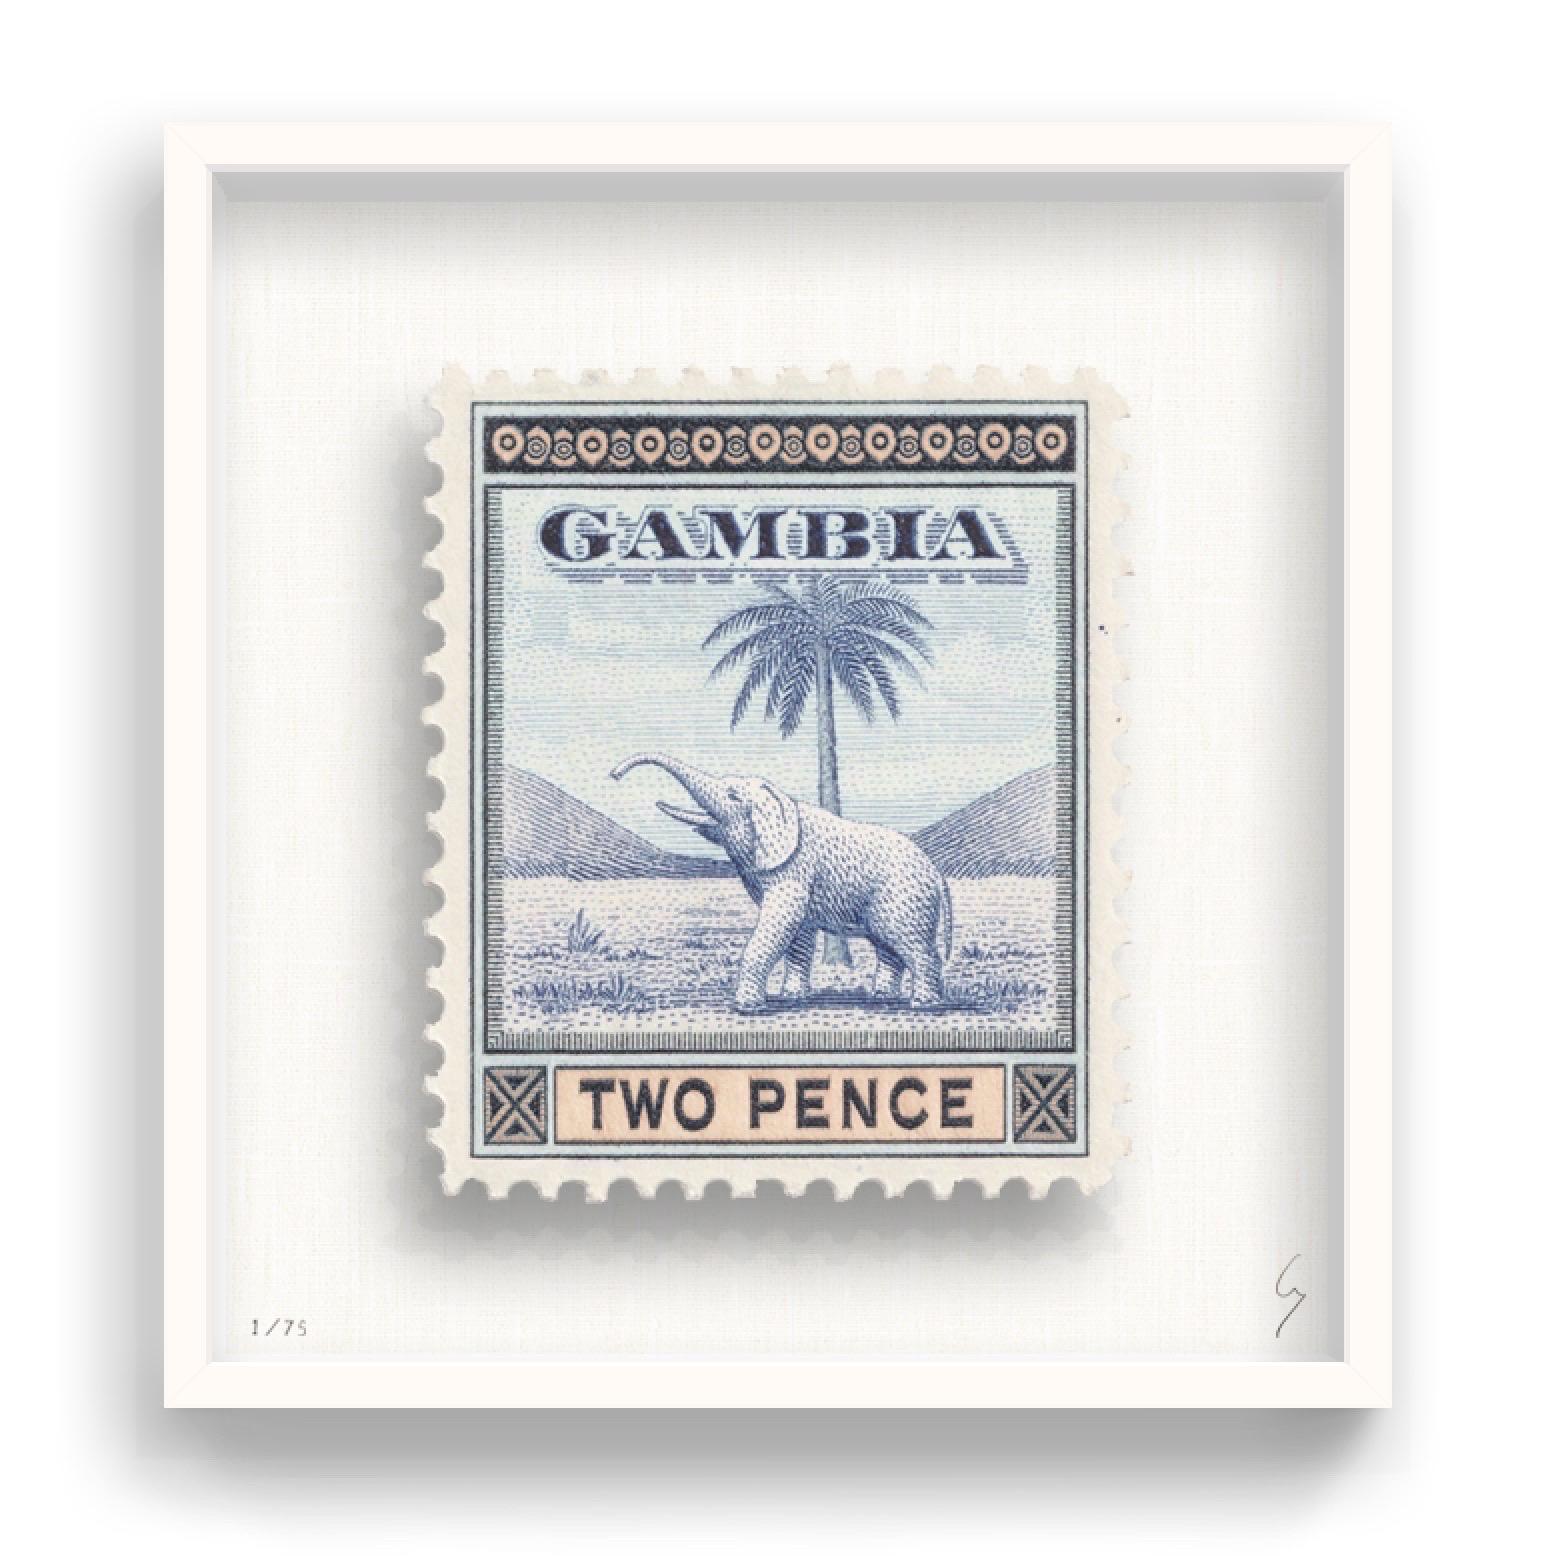 Guy Gee, Gambia (mittelgroß)

Handgravur auf 350gsm auf G.F Smith Karton
53 x 56cm (20 4/5 x 22 2/5 in)
Inklusive Rahmen 
Auflage von 75 

Jedes Kunstwerk von Guy wurde auf der Grundlage einer Originalbriefmarke digital nachgebildet. Das von Hand